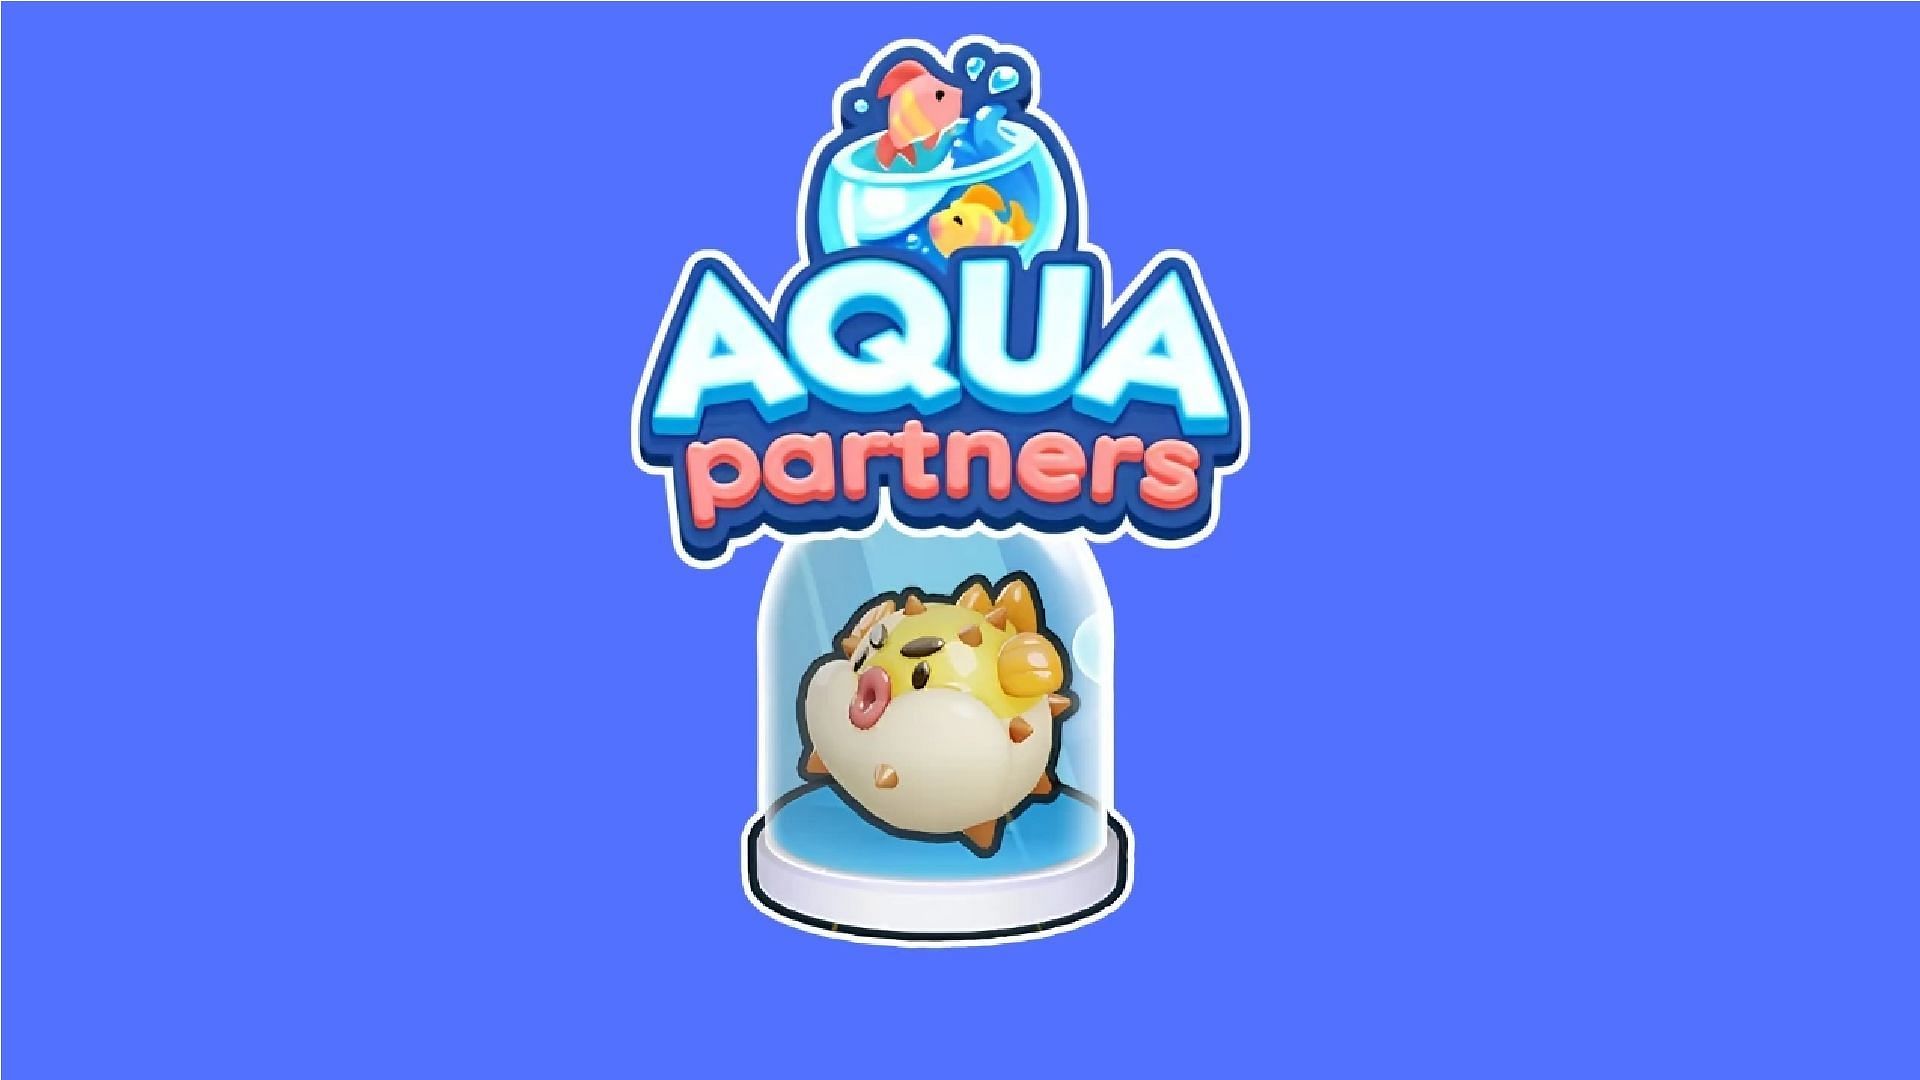 Monopoly Go Aqua Partners event